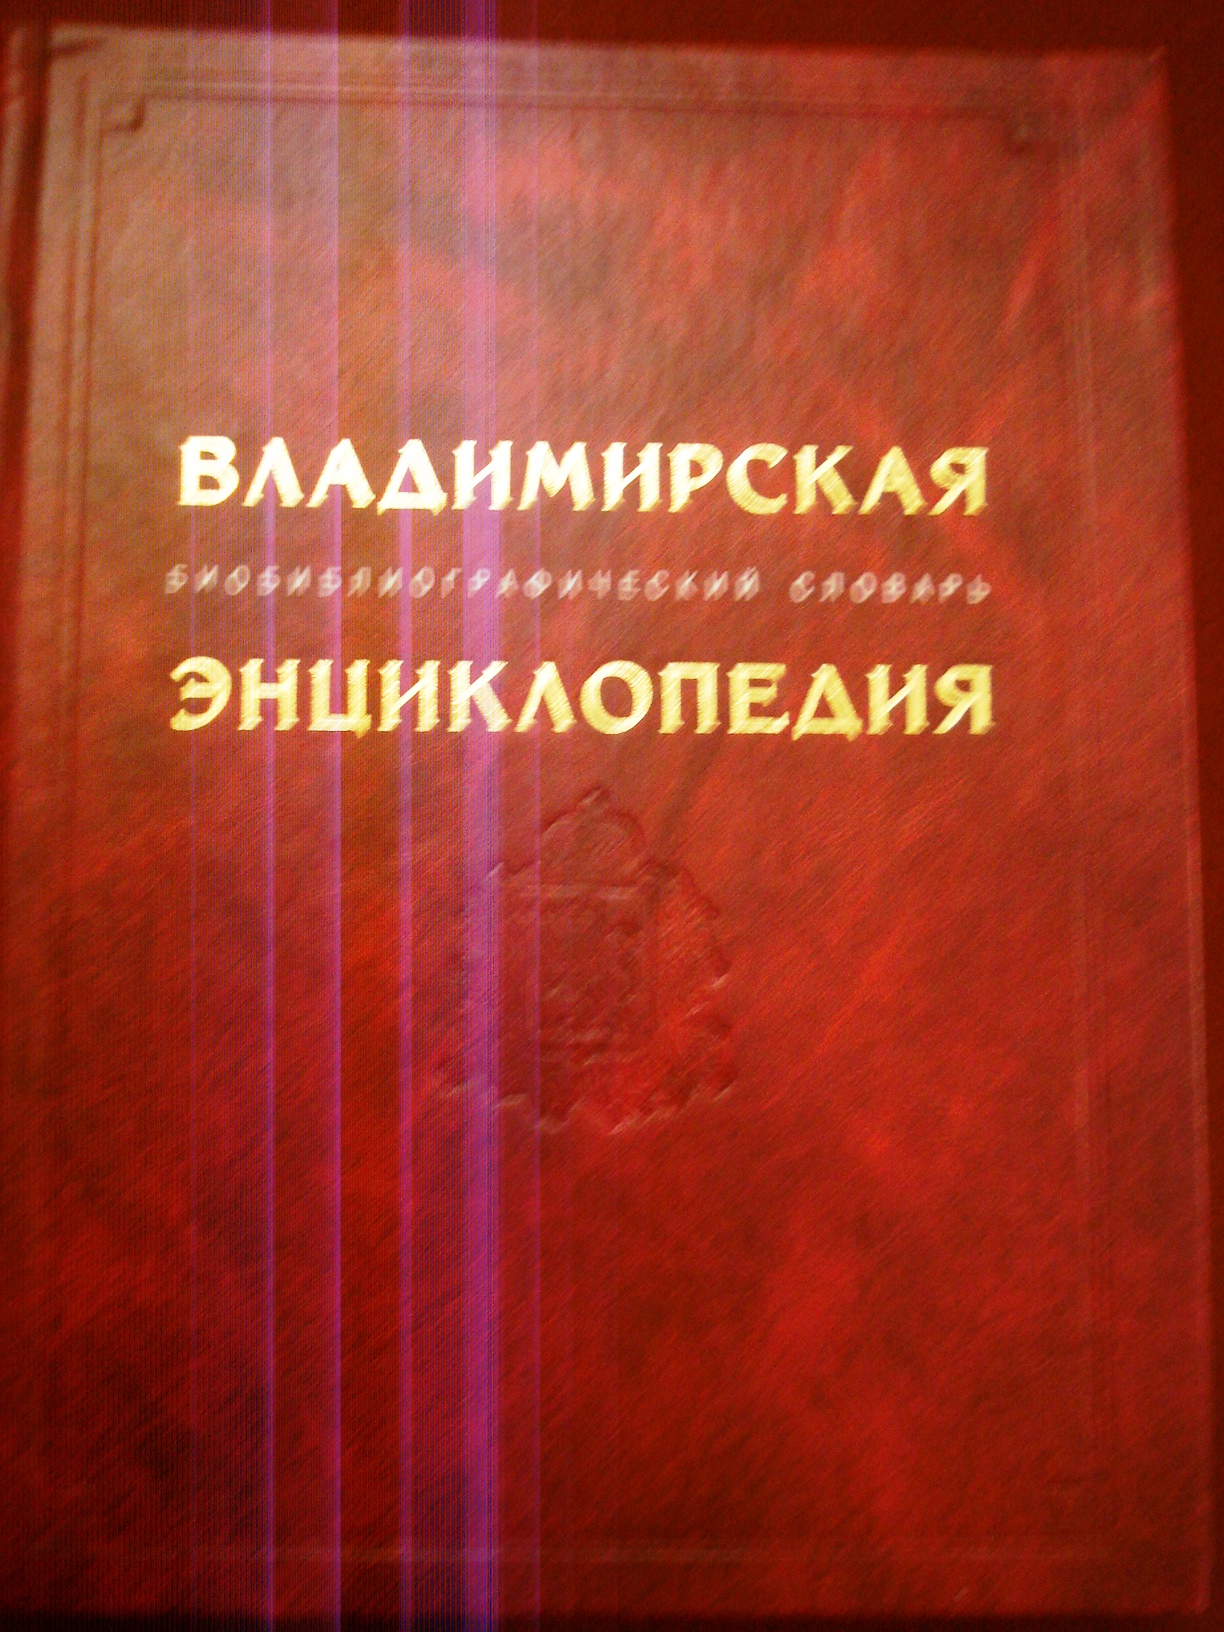 Книга из читального зала музея.